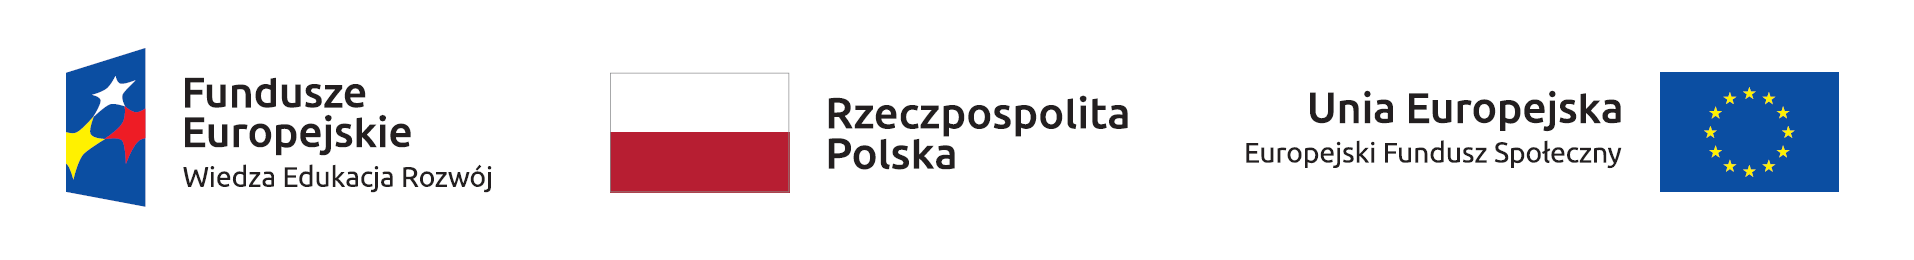 Logotypy Polski oraz unii europejskiej